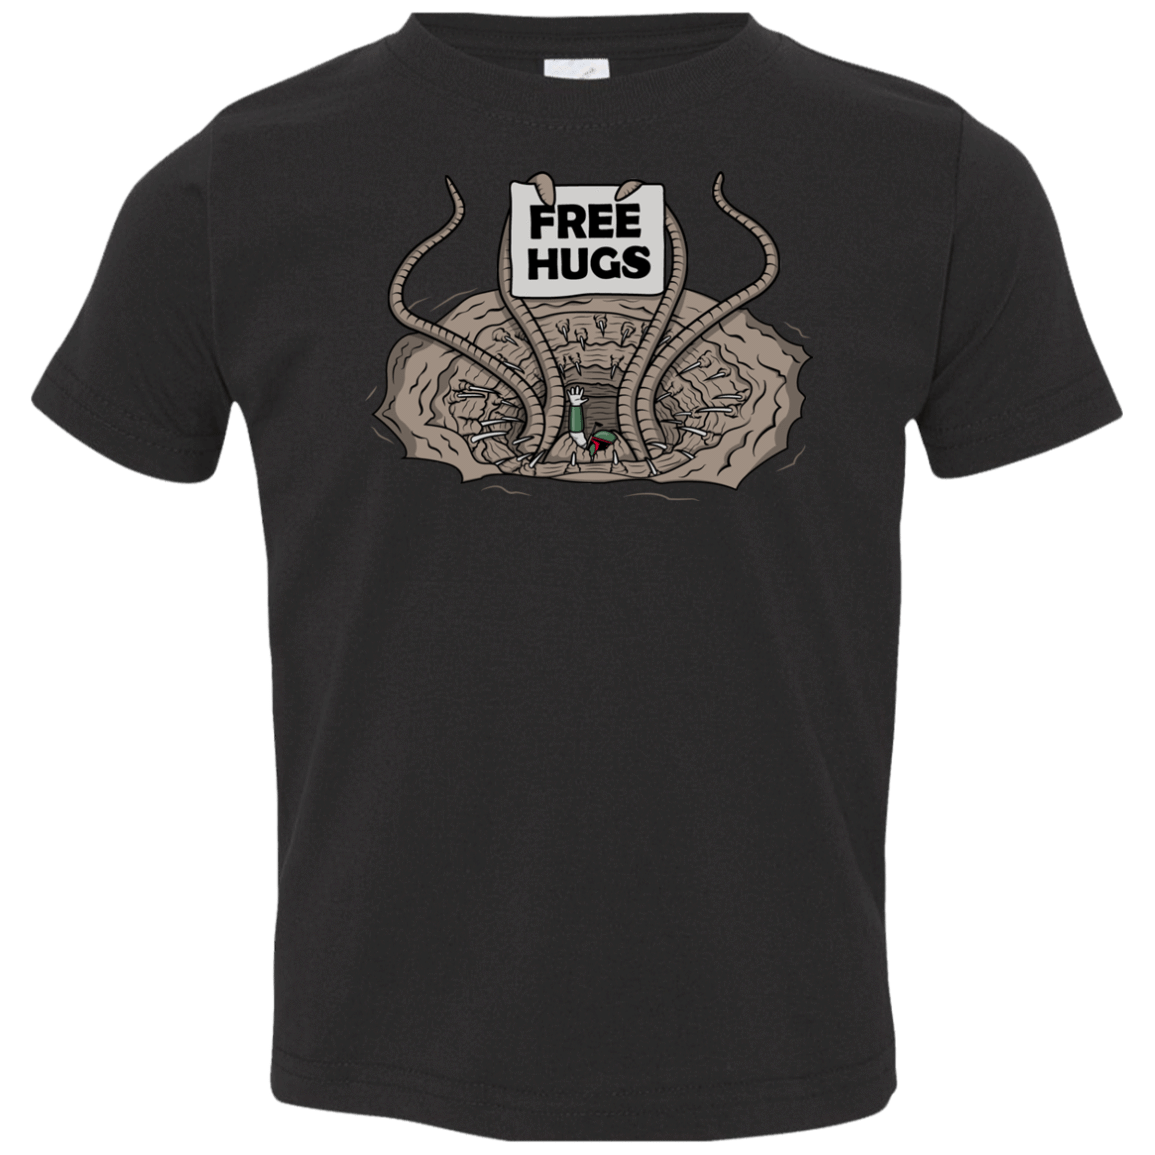 T-Shirts Black / 2T Sarlacc Free Hugs Toddler Premium T-Shirt